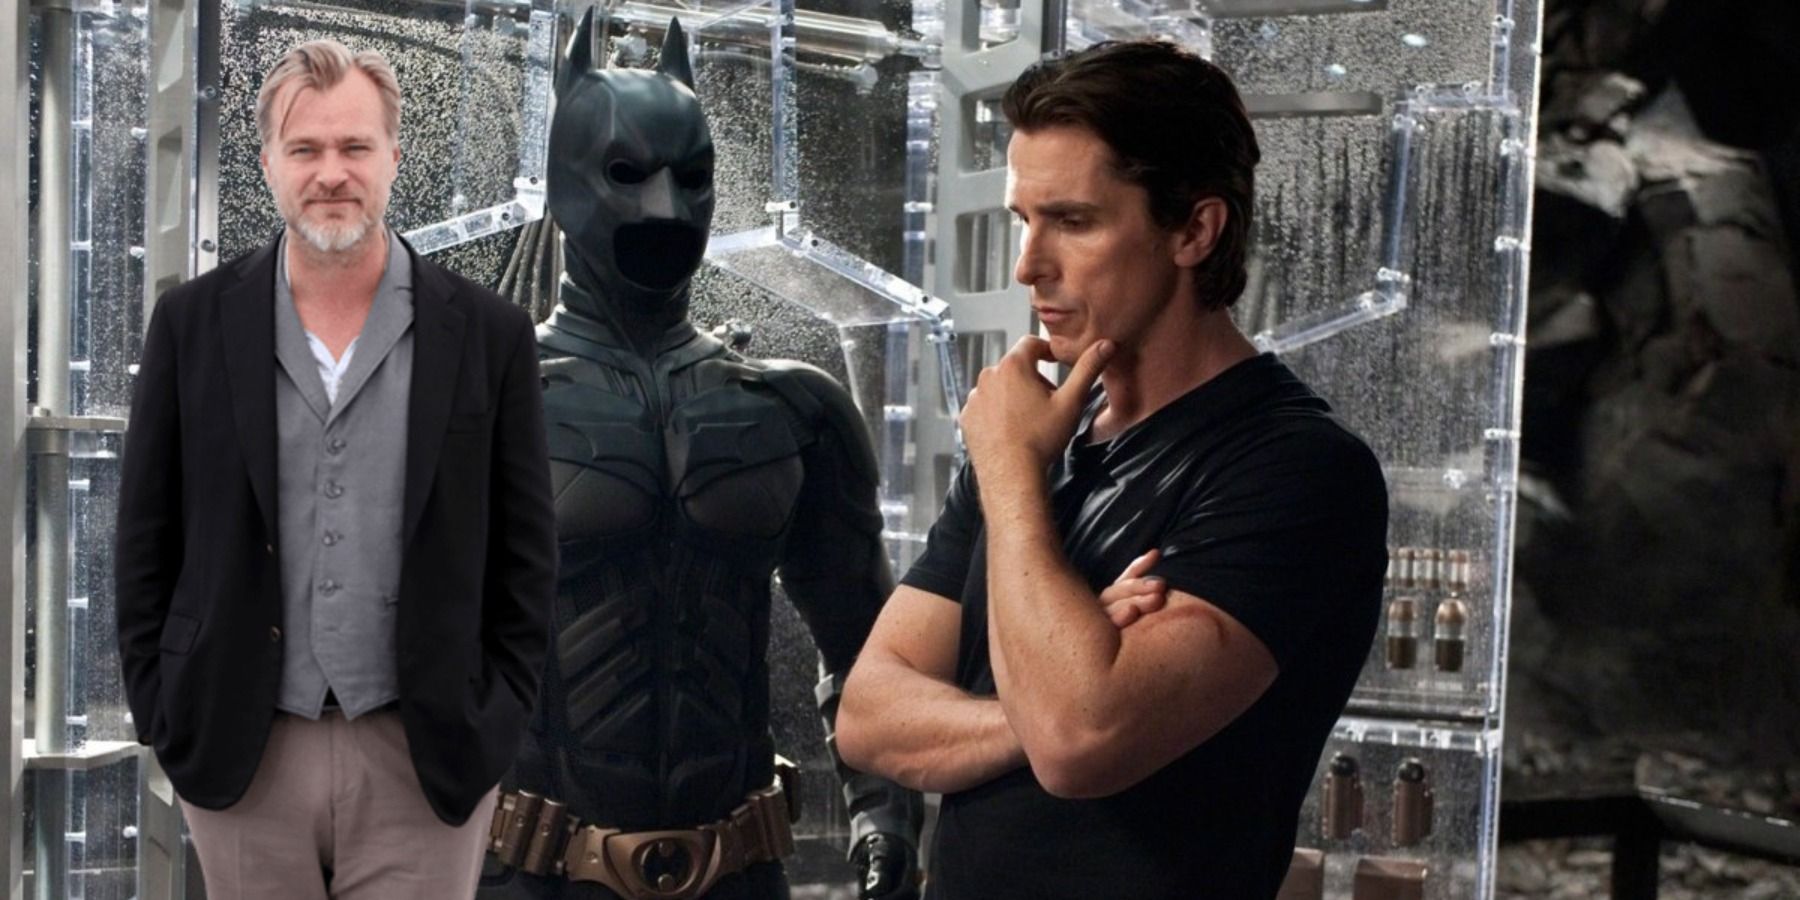 Christian Bale ville komme tilbake som Batman igjen hvis Christopher Nolan spurte